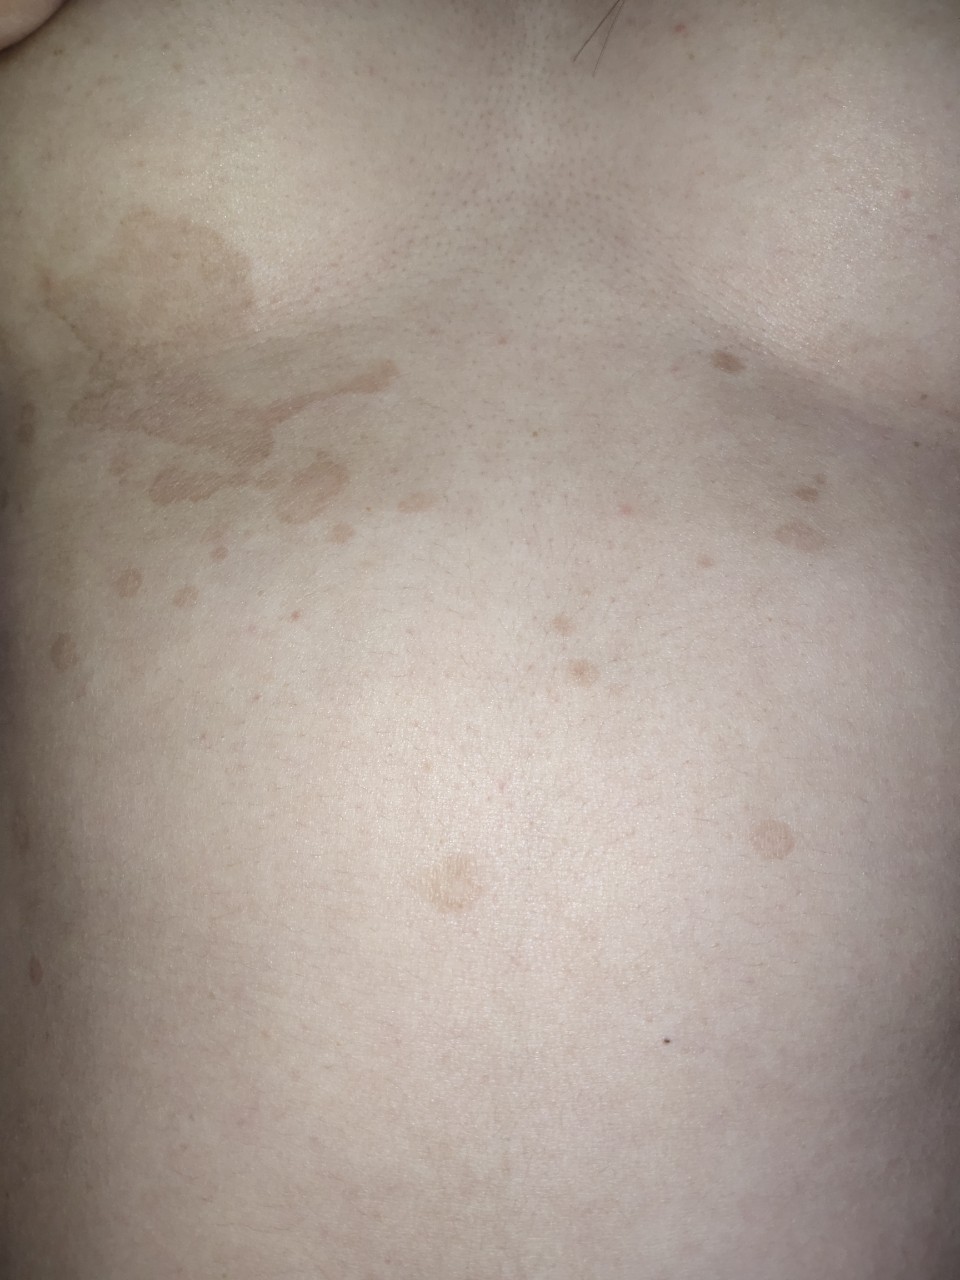 черные точки на груди у женщин фото 12